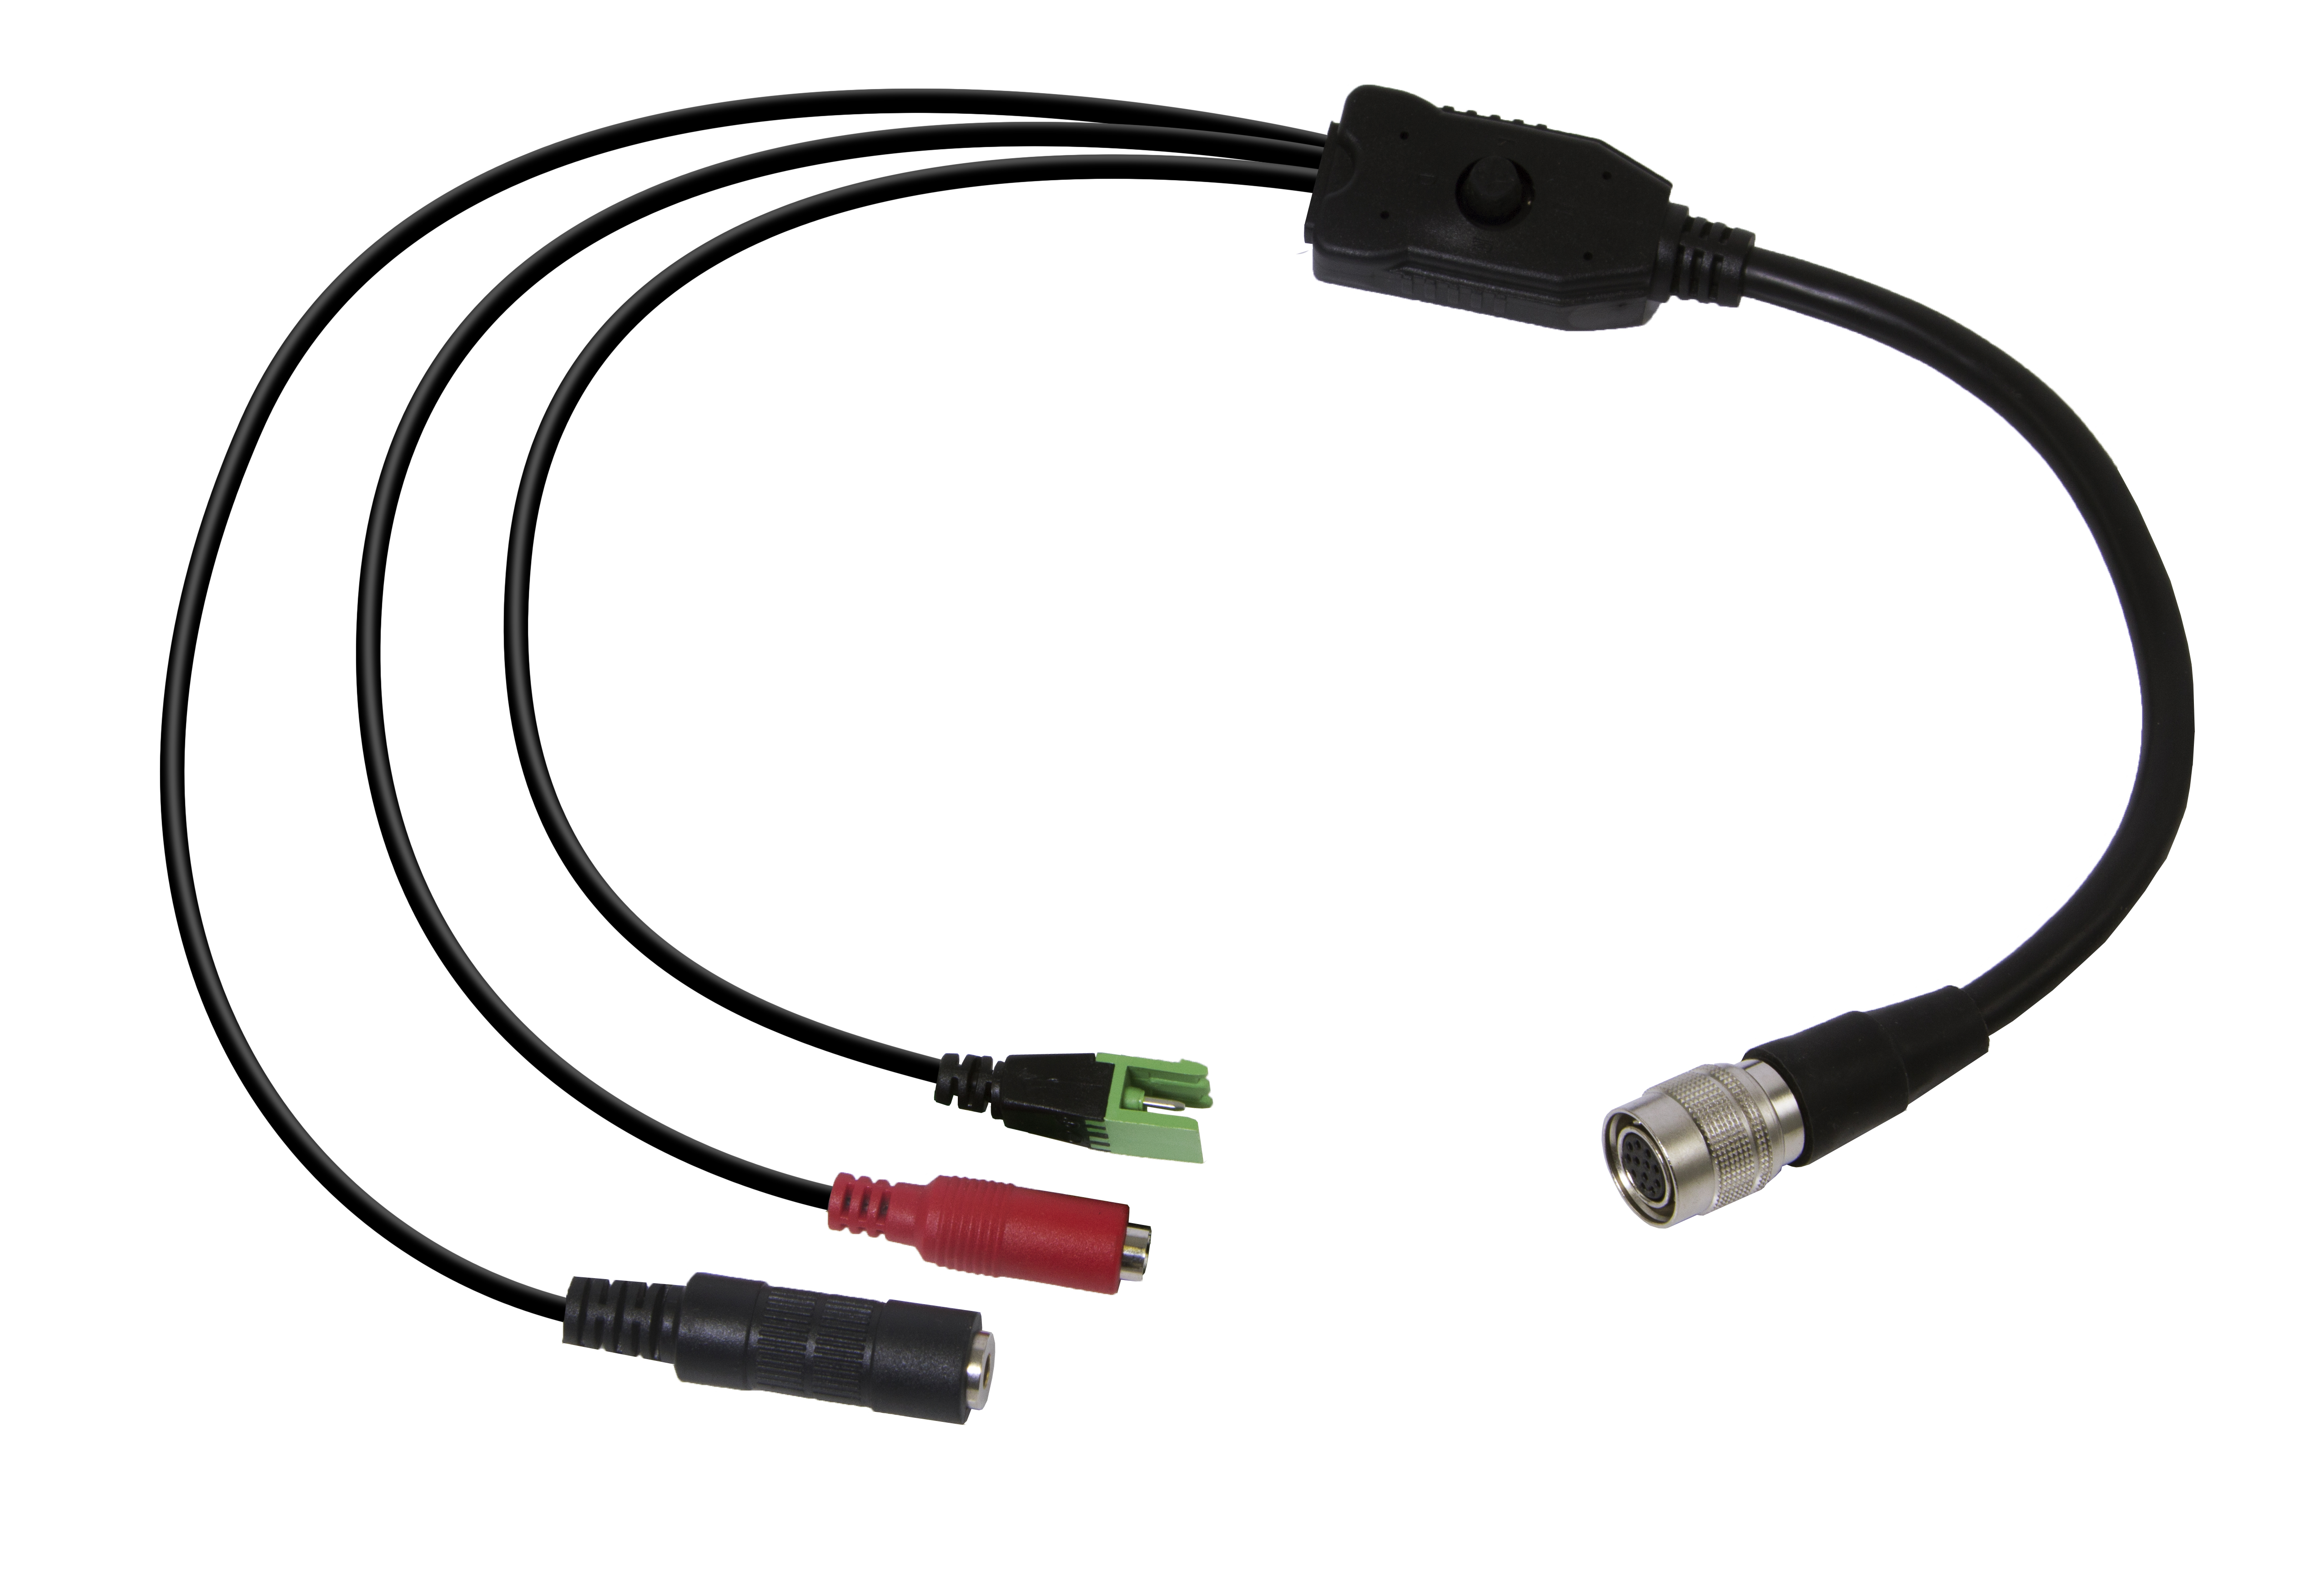 CV503 cables